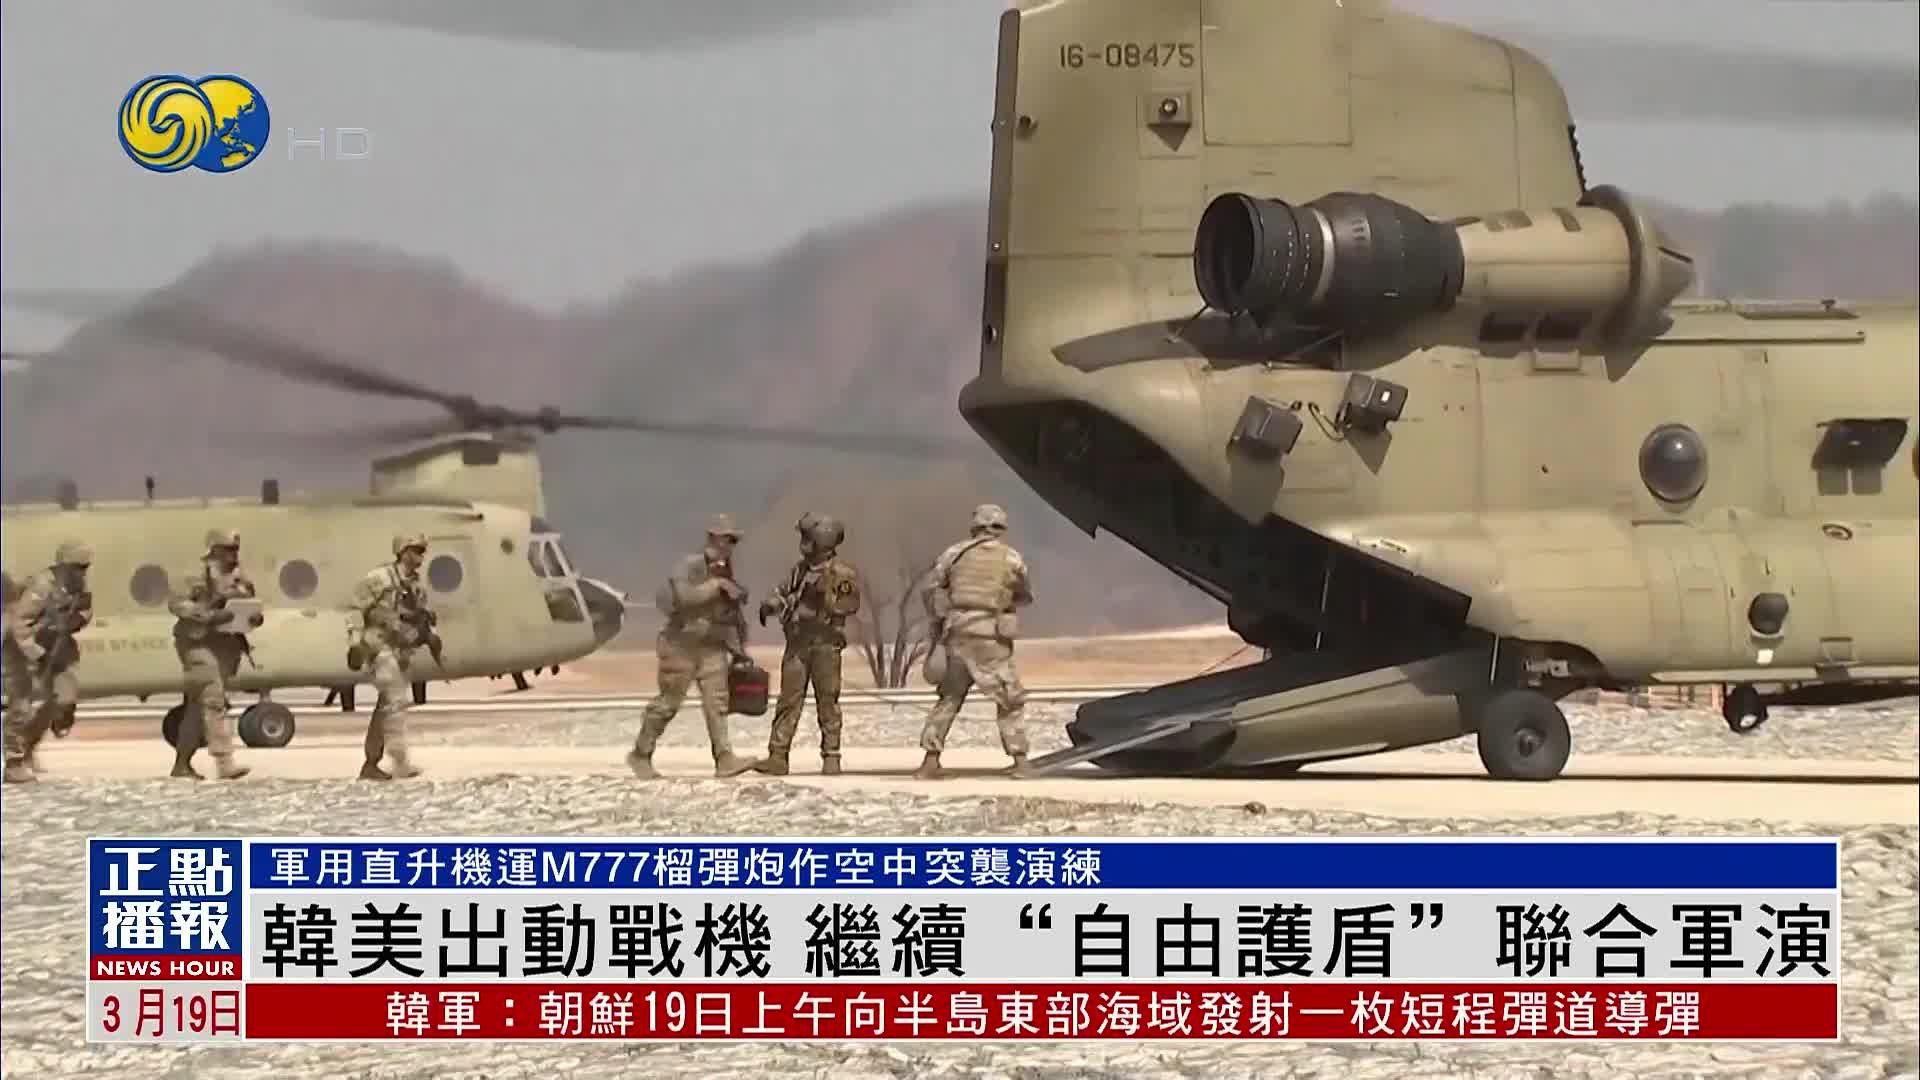 韩美11日正式大规模军演 朝媒称已进入大决战前夕 - 新闻 - 加拿大华人网 - 加拿大华人门户网站